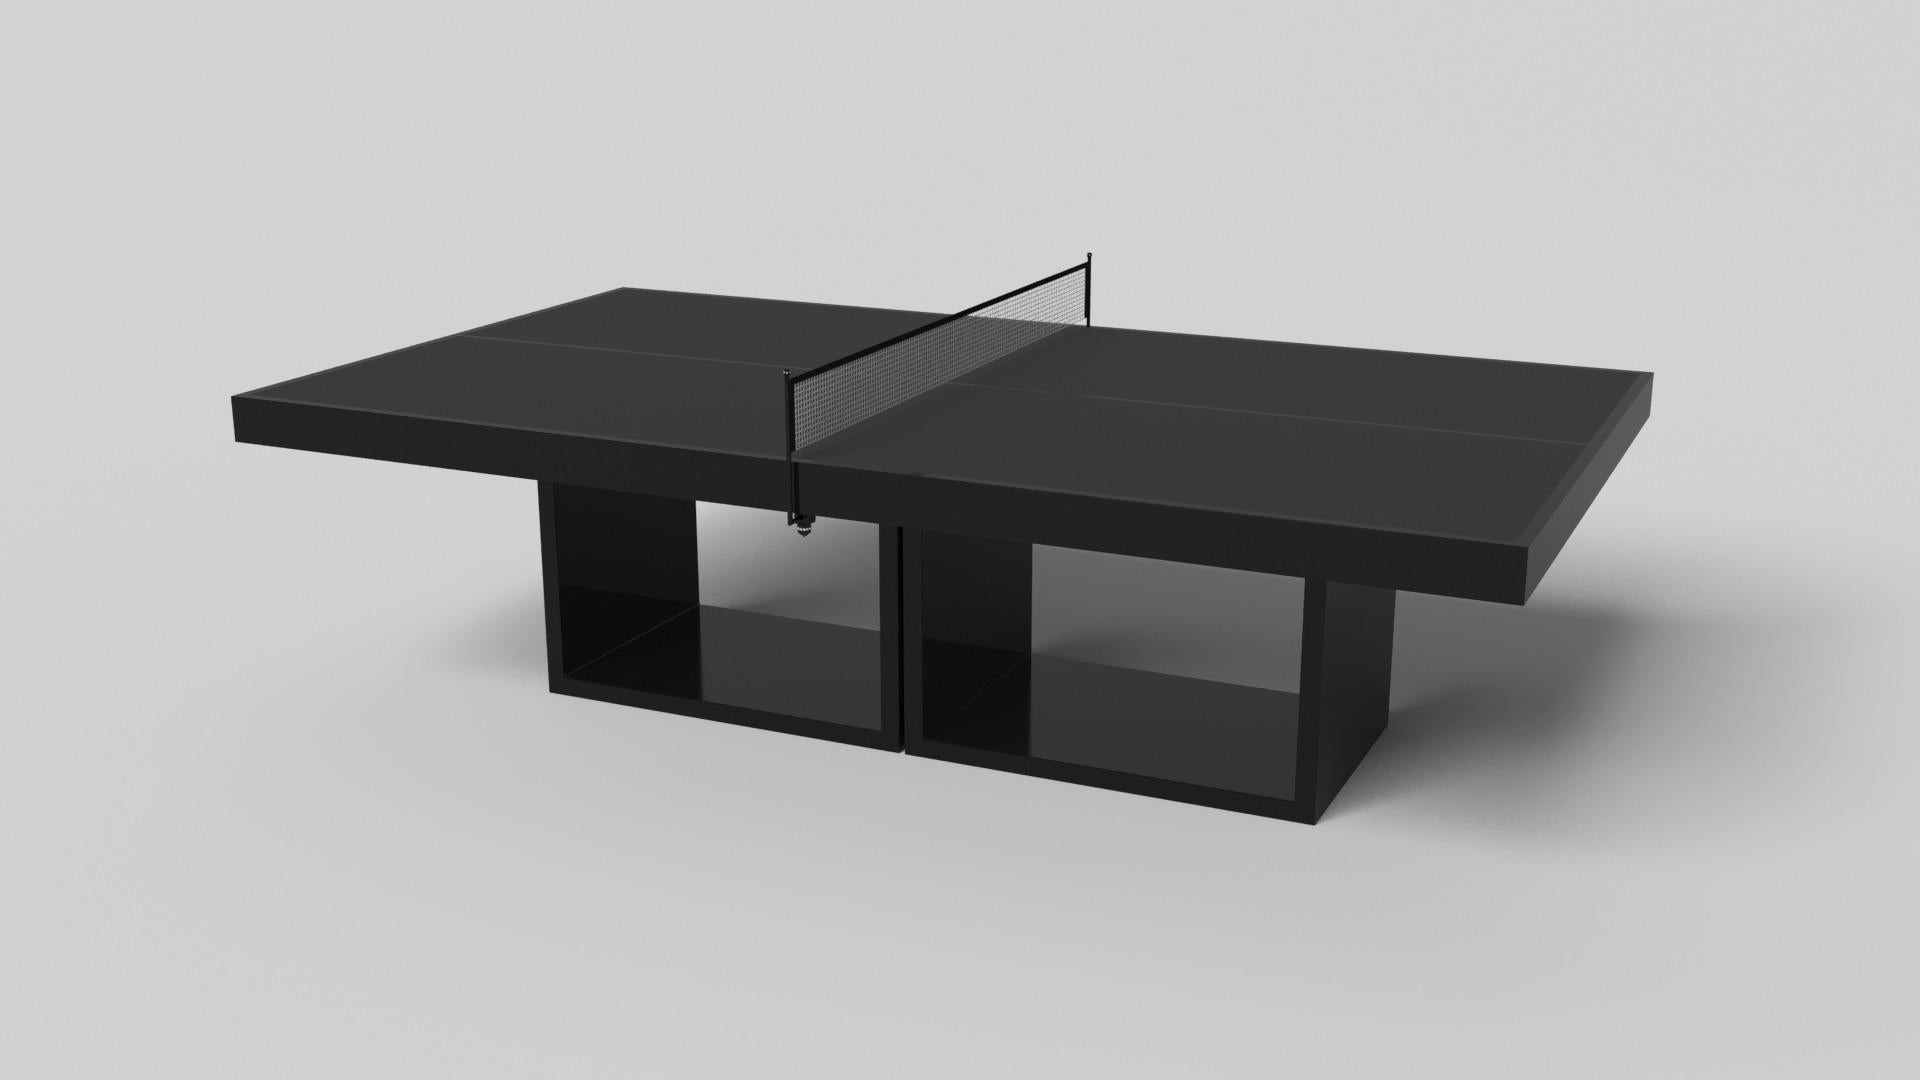 Soutenue par deux socles rectangulaires ouverts en guise de base, cette table de ping-pong fabriquée à la main est moderne et minimaliste avec sa combinaison de formes simples et géométriques. Vue de face, l'utilisation de l'espace négatif est